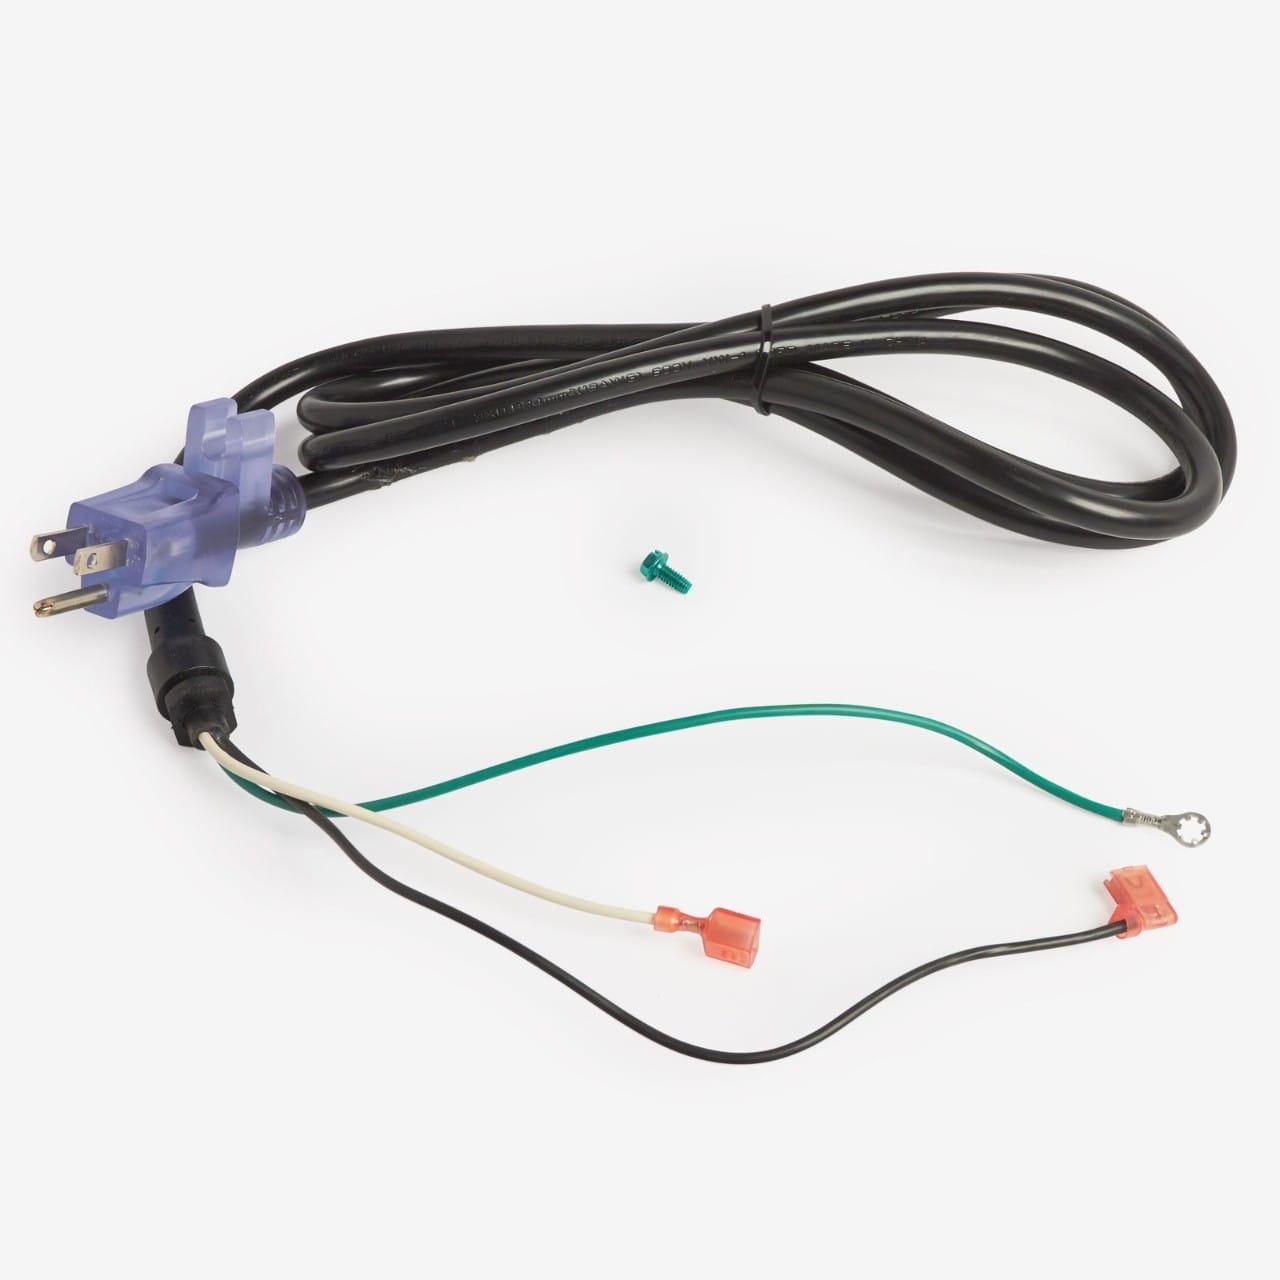 Graco 390 Power Cord Repair Kit